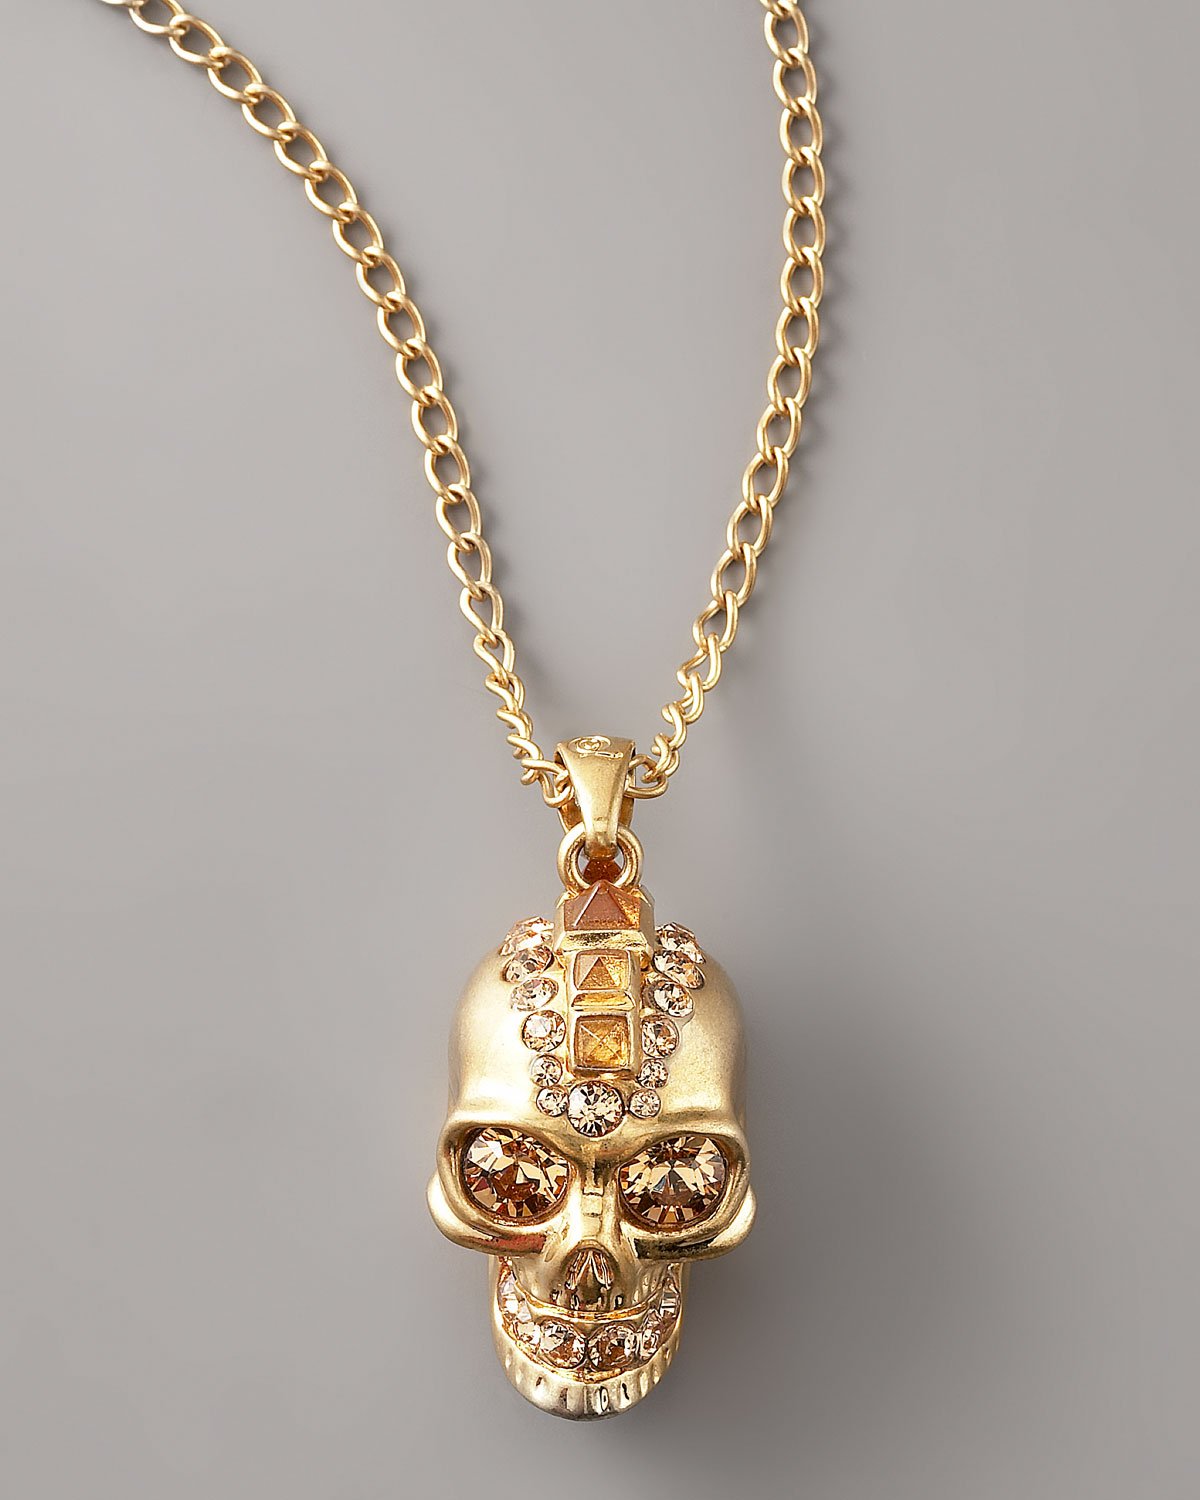 Lyst - Alexander Mcqueen Skull Pendant Necklace/old Gold in Metallic